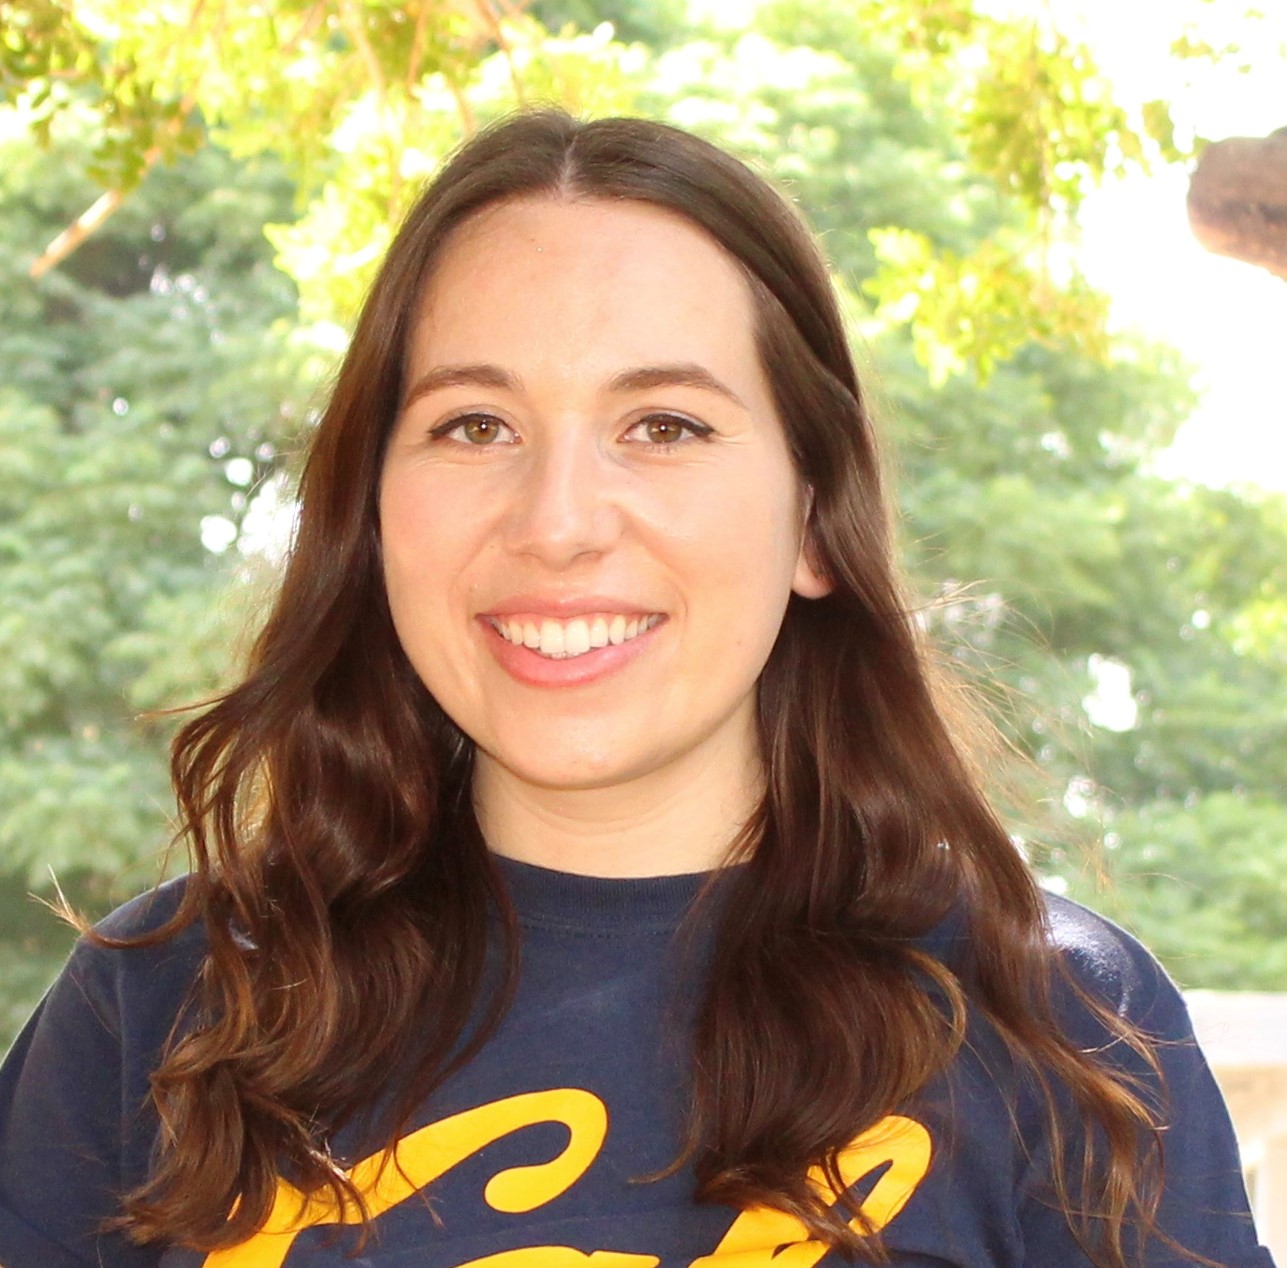 ARCS Scholar Rachelle Stark UC Berkeley